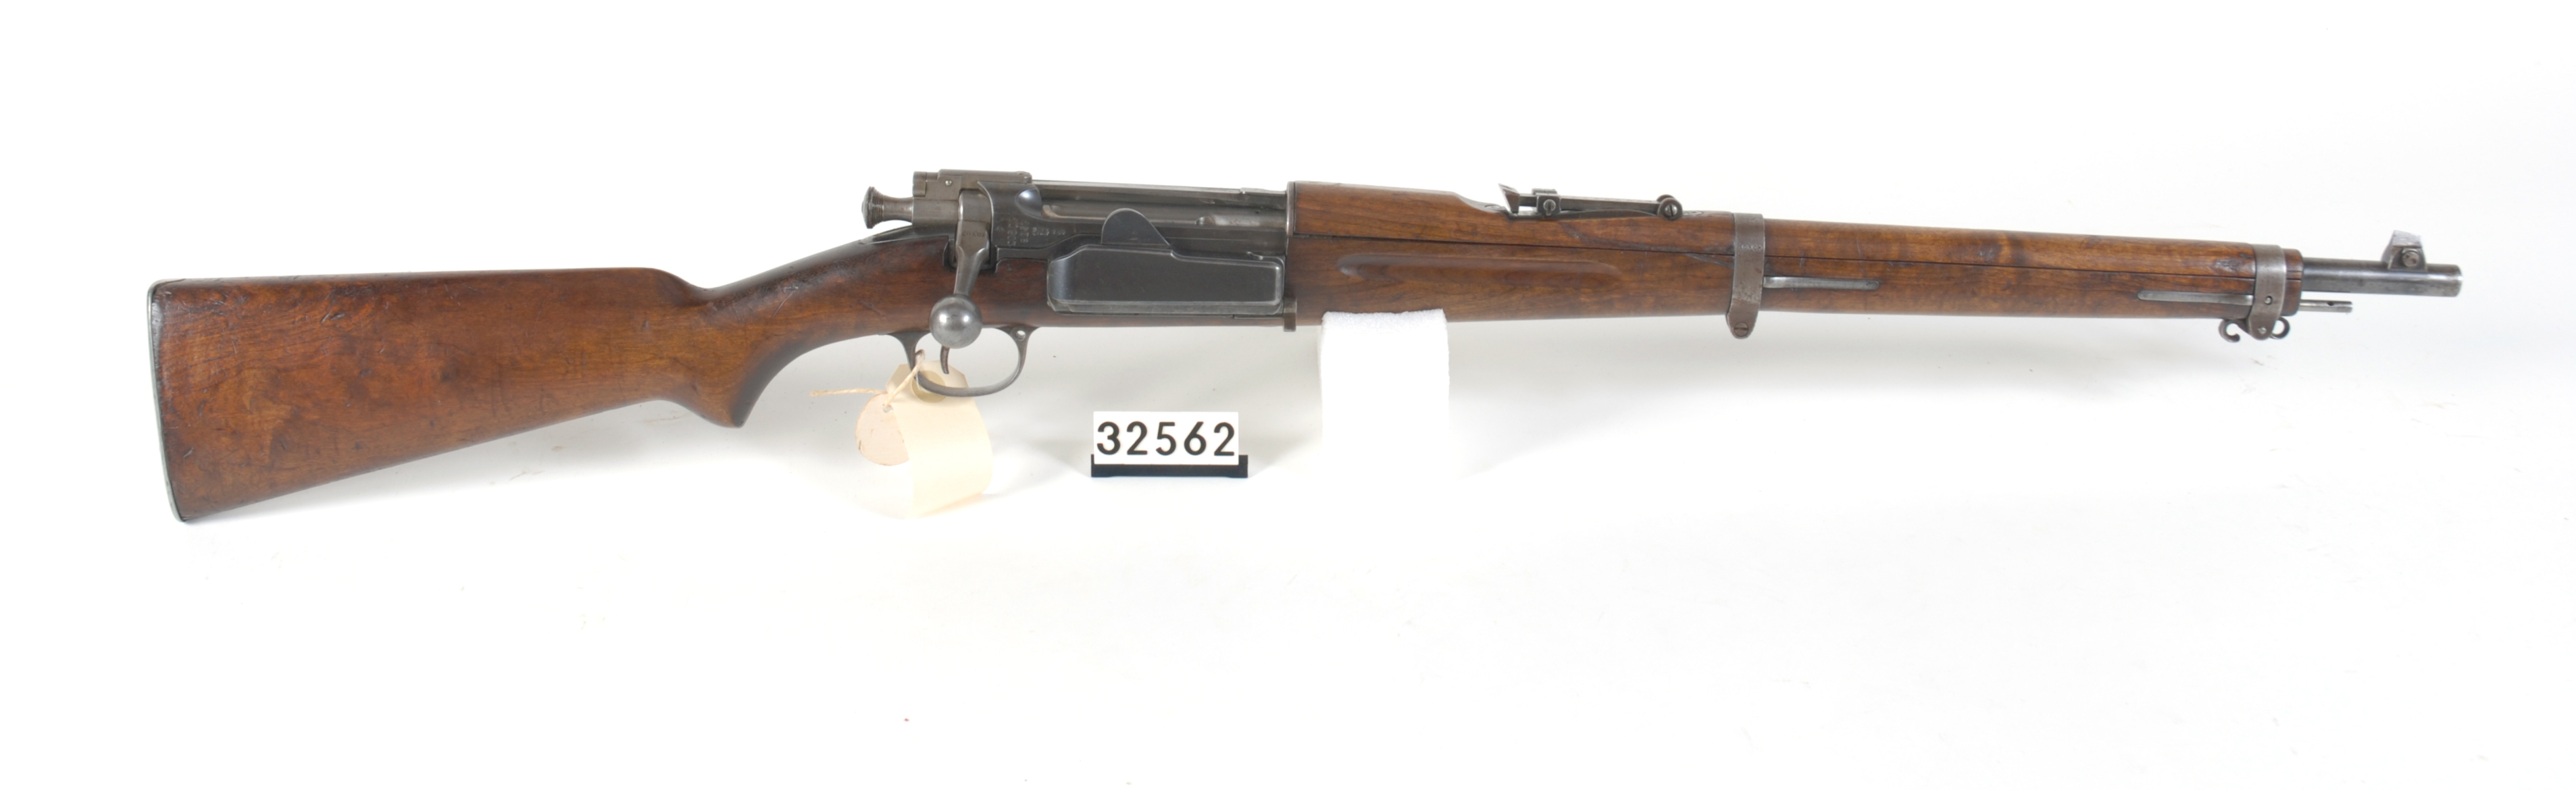 ./guns/rifle/bilder/Rifle-Kongsberg-Krag-M1904-FMU.032562.jpg